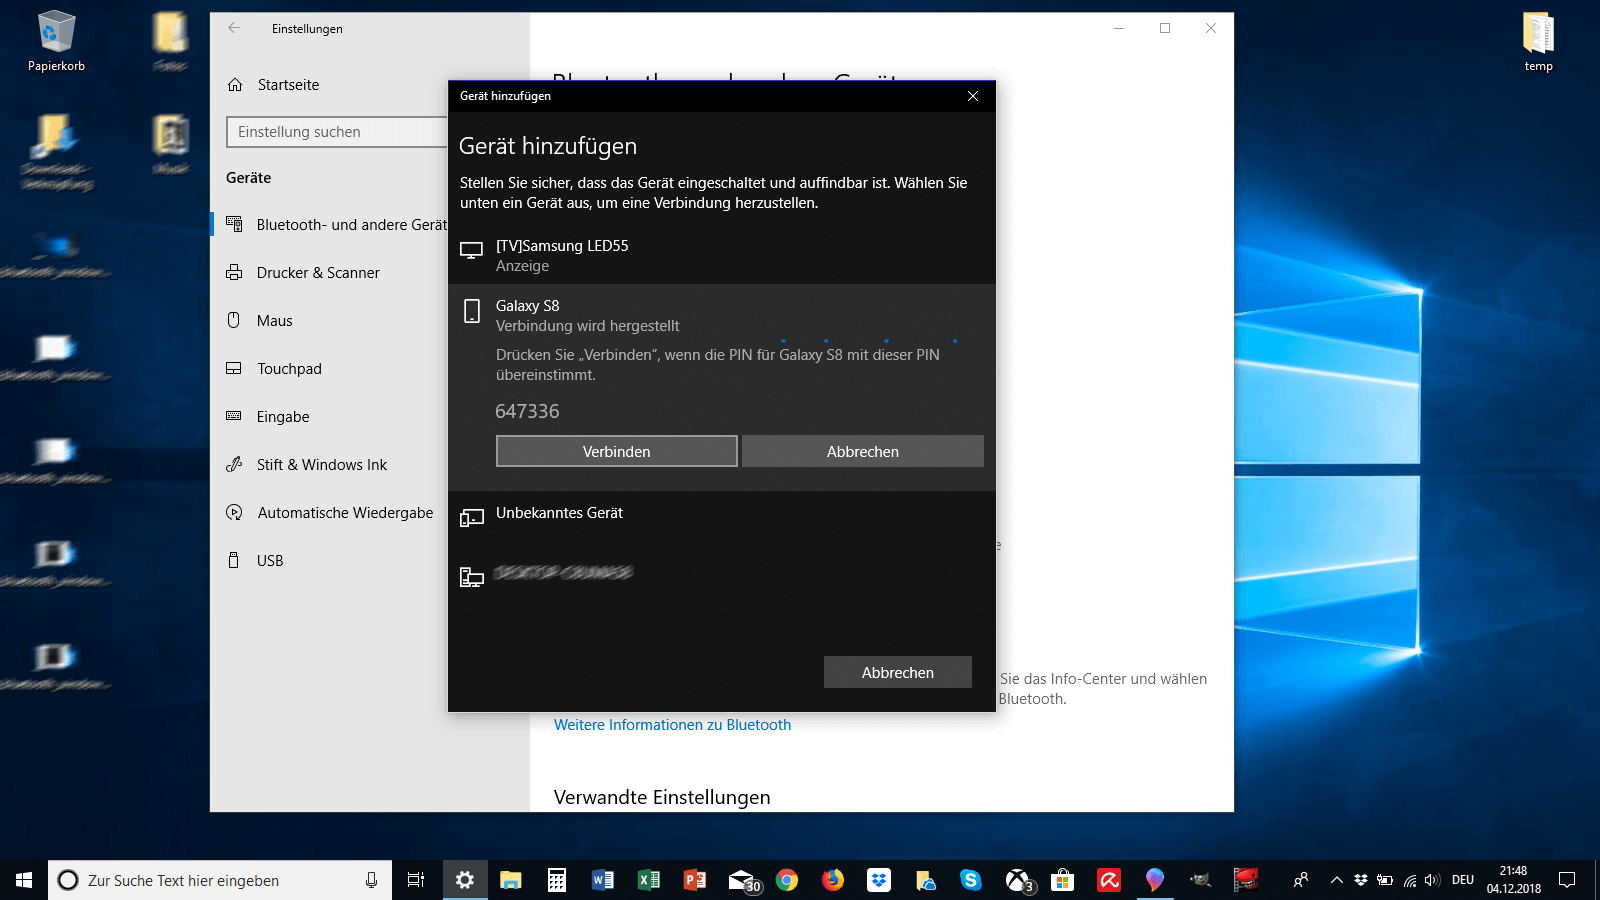 Bluetooth-Gerät hinzufügen unter Windows 10